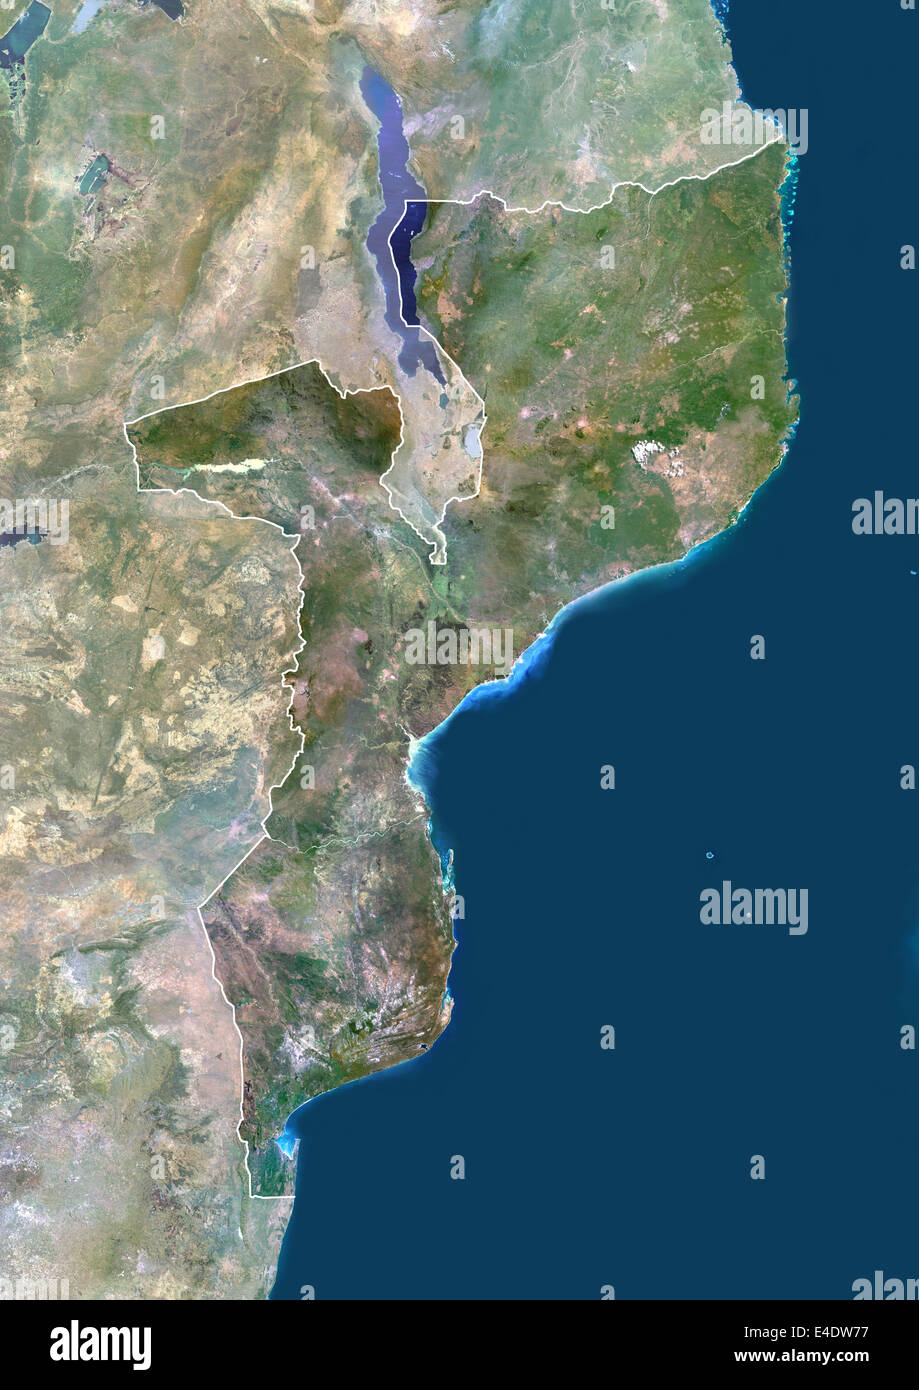 Mosambik, Afrika, Echtfarben-Satellitenbild mit Rand und Maske. Satellitenansicht von Mosambik (mit Rand und Maske). Dies Stockfoto